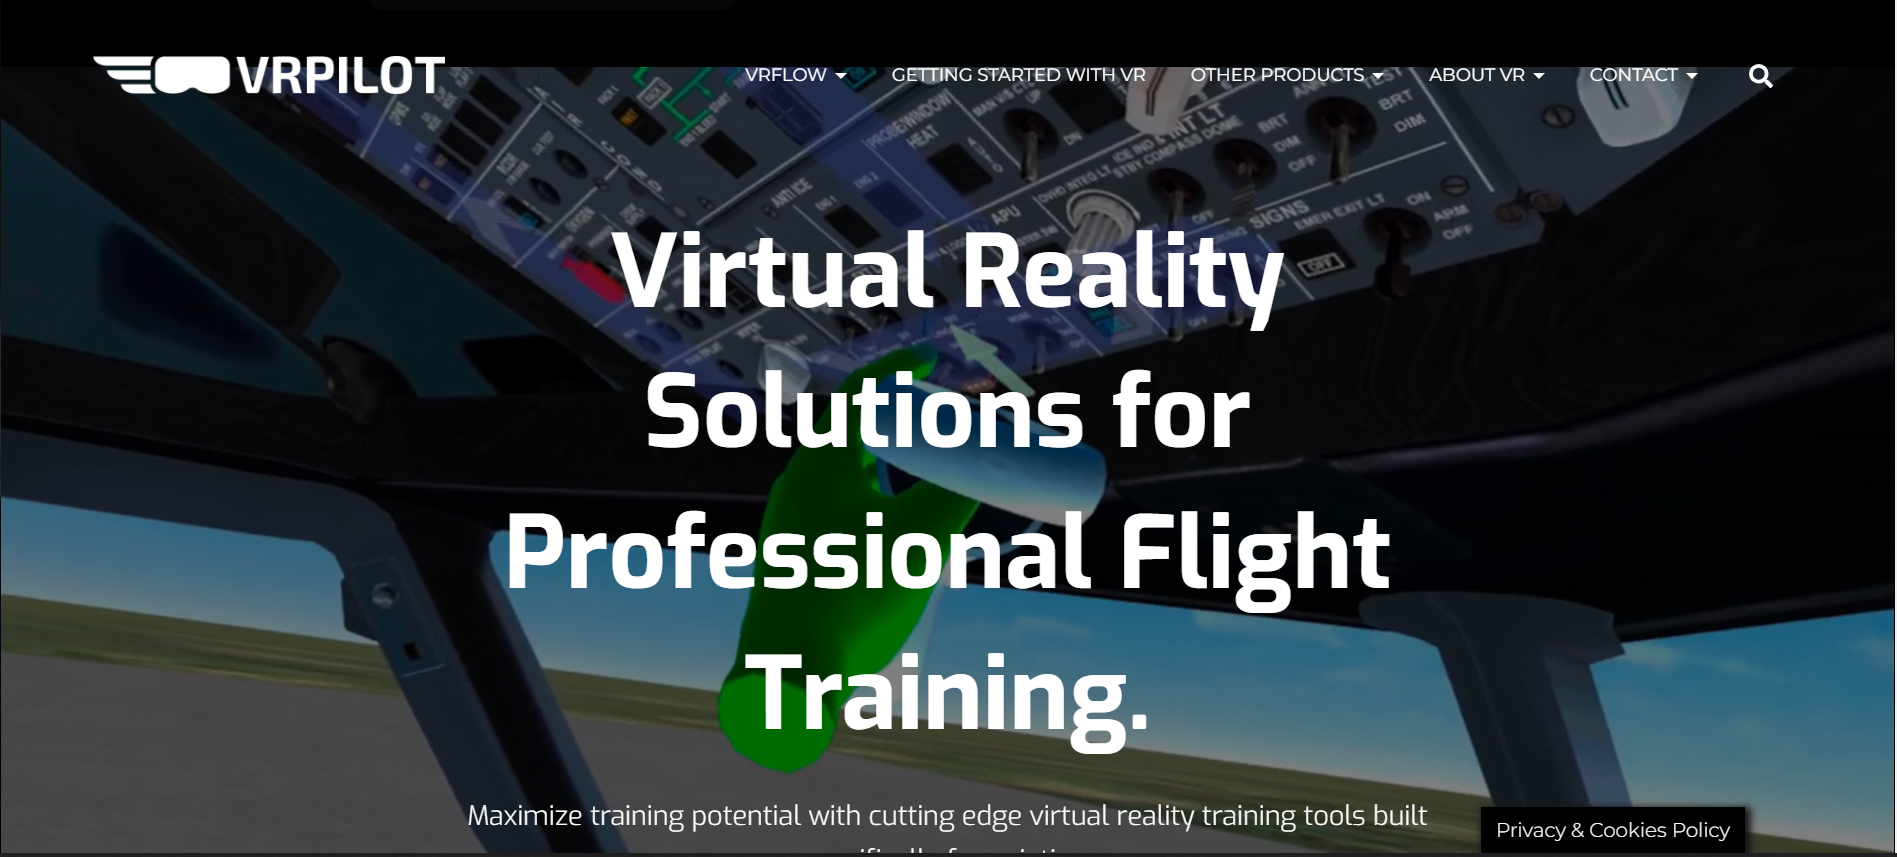 VRPILOT，虛擬實境的訓練，提升學習效能、保障人身安全